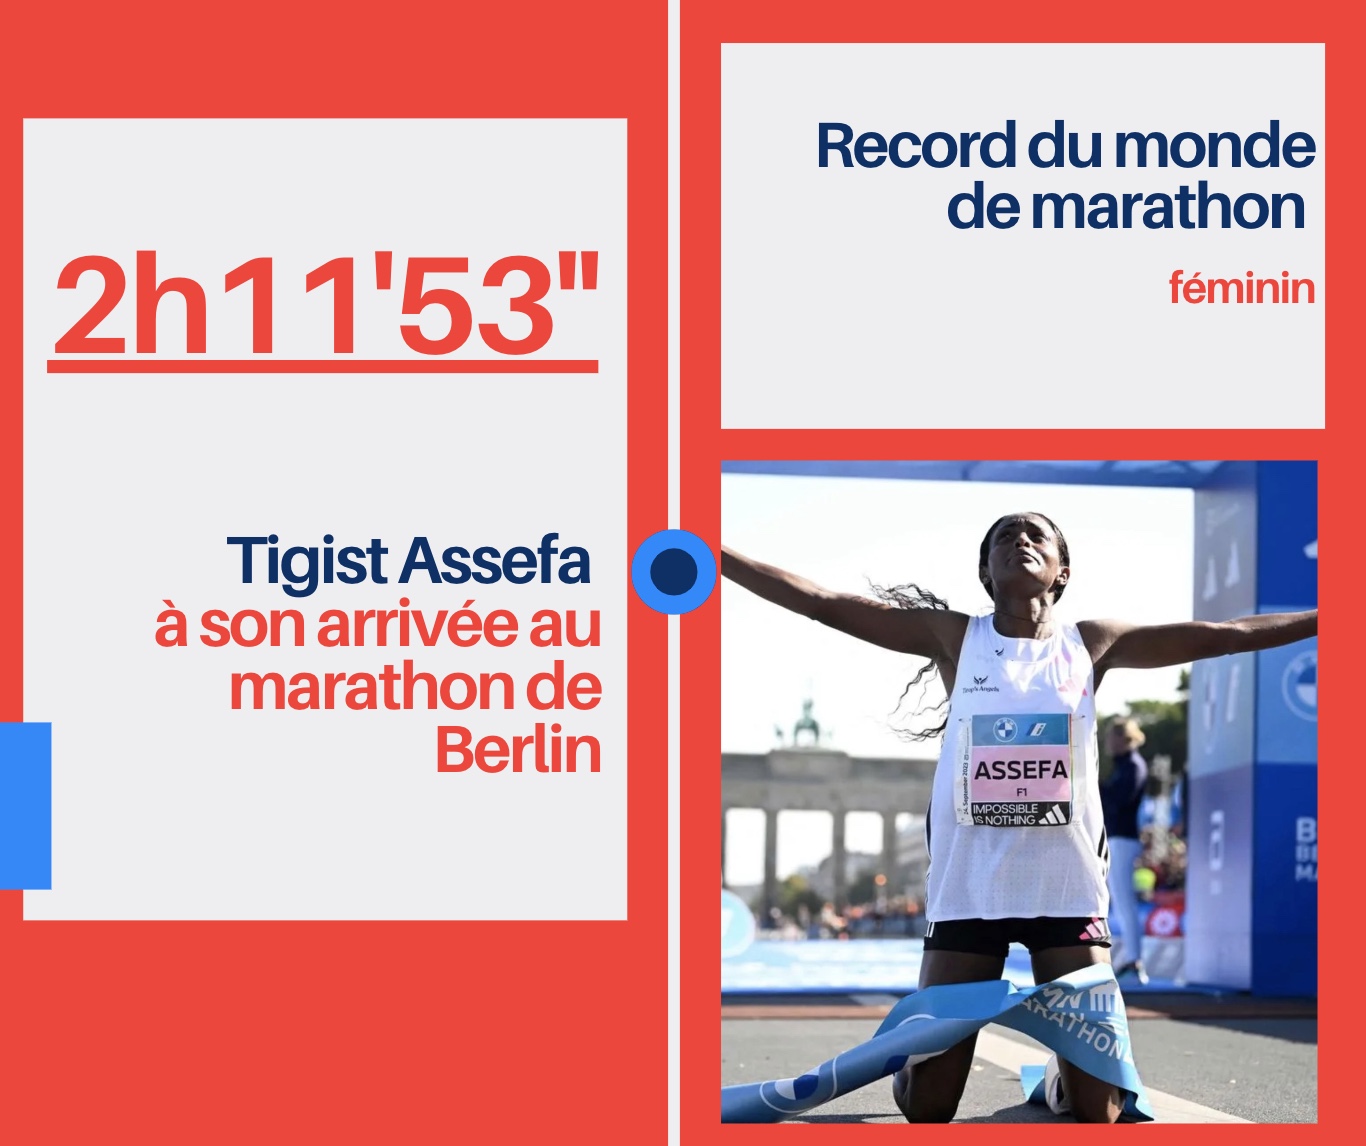 Record du monde marathon féminin